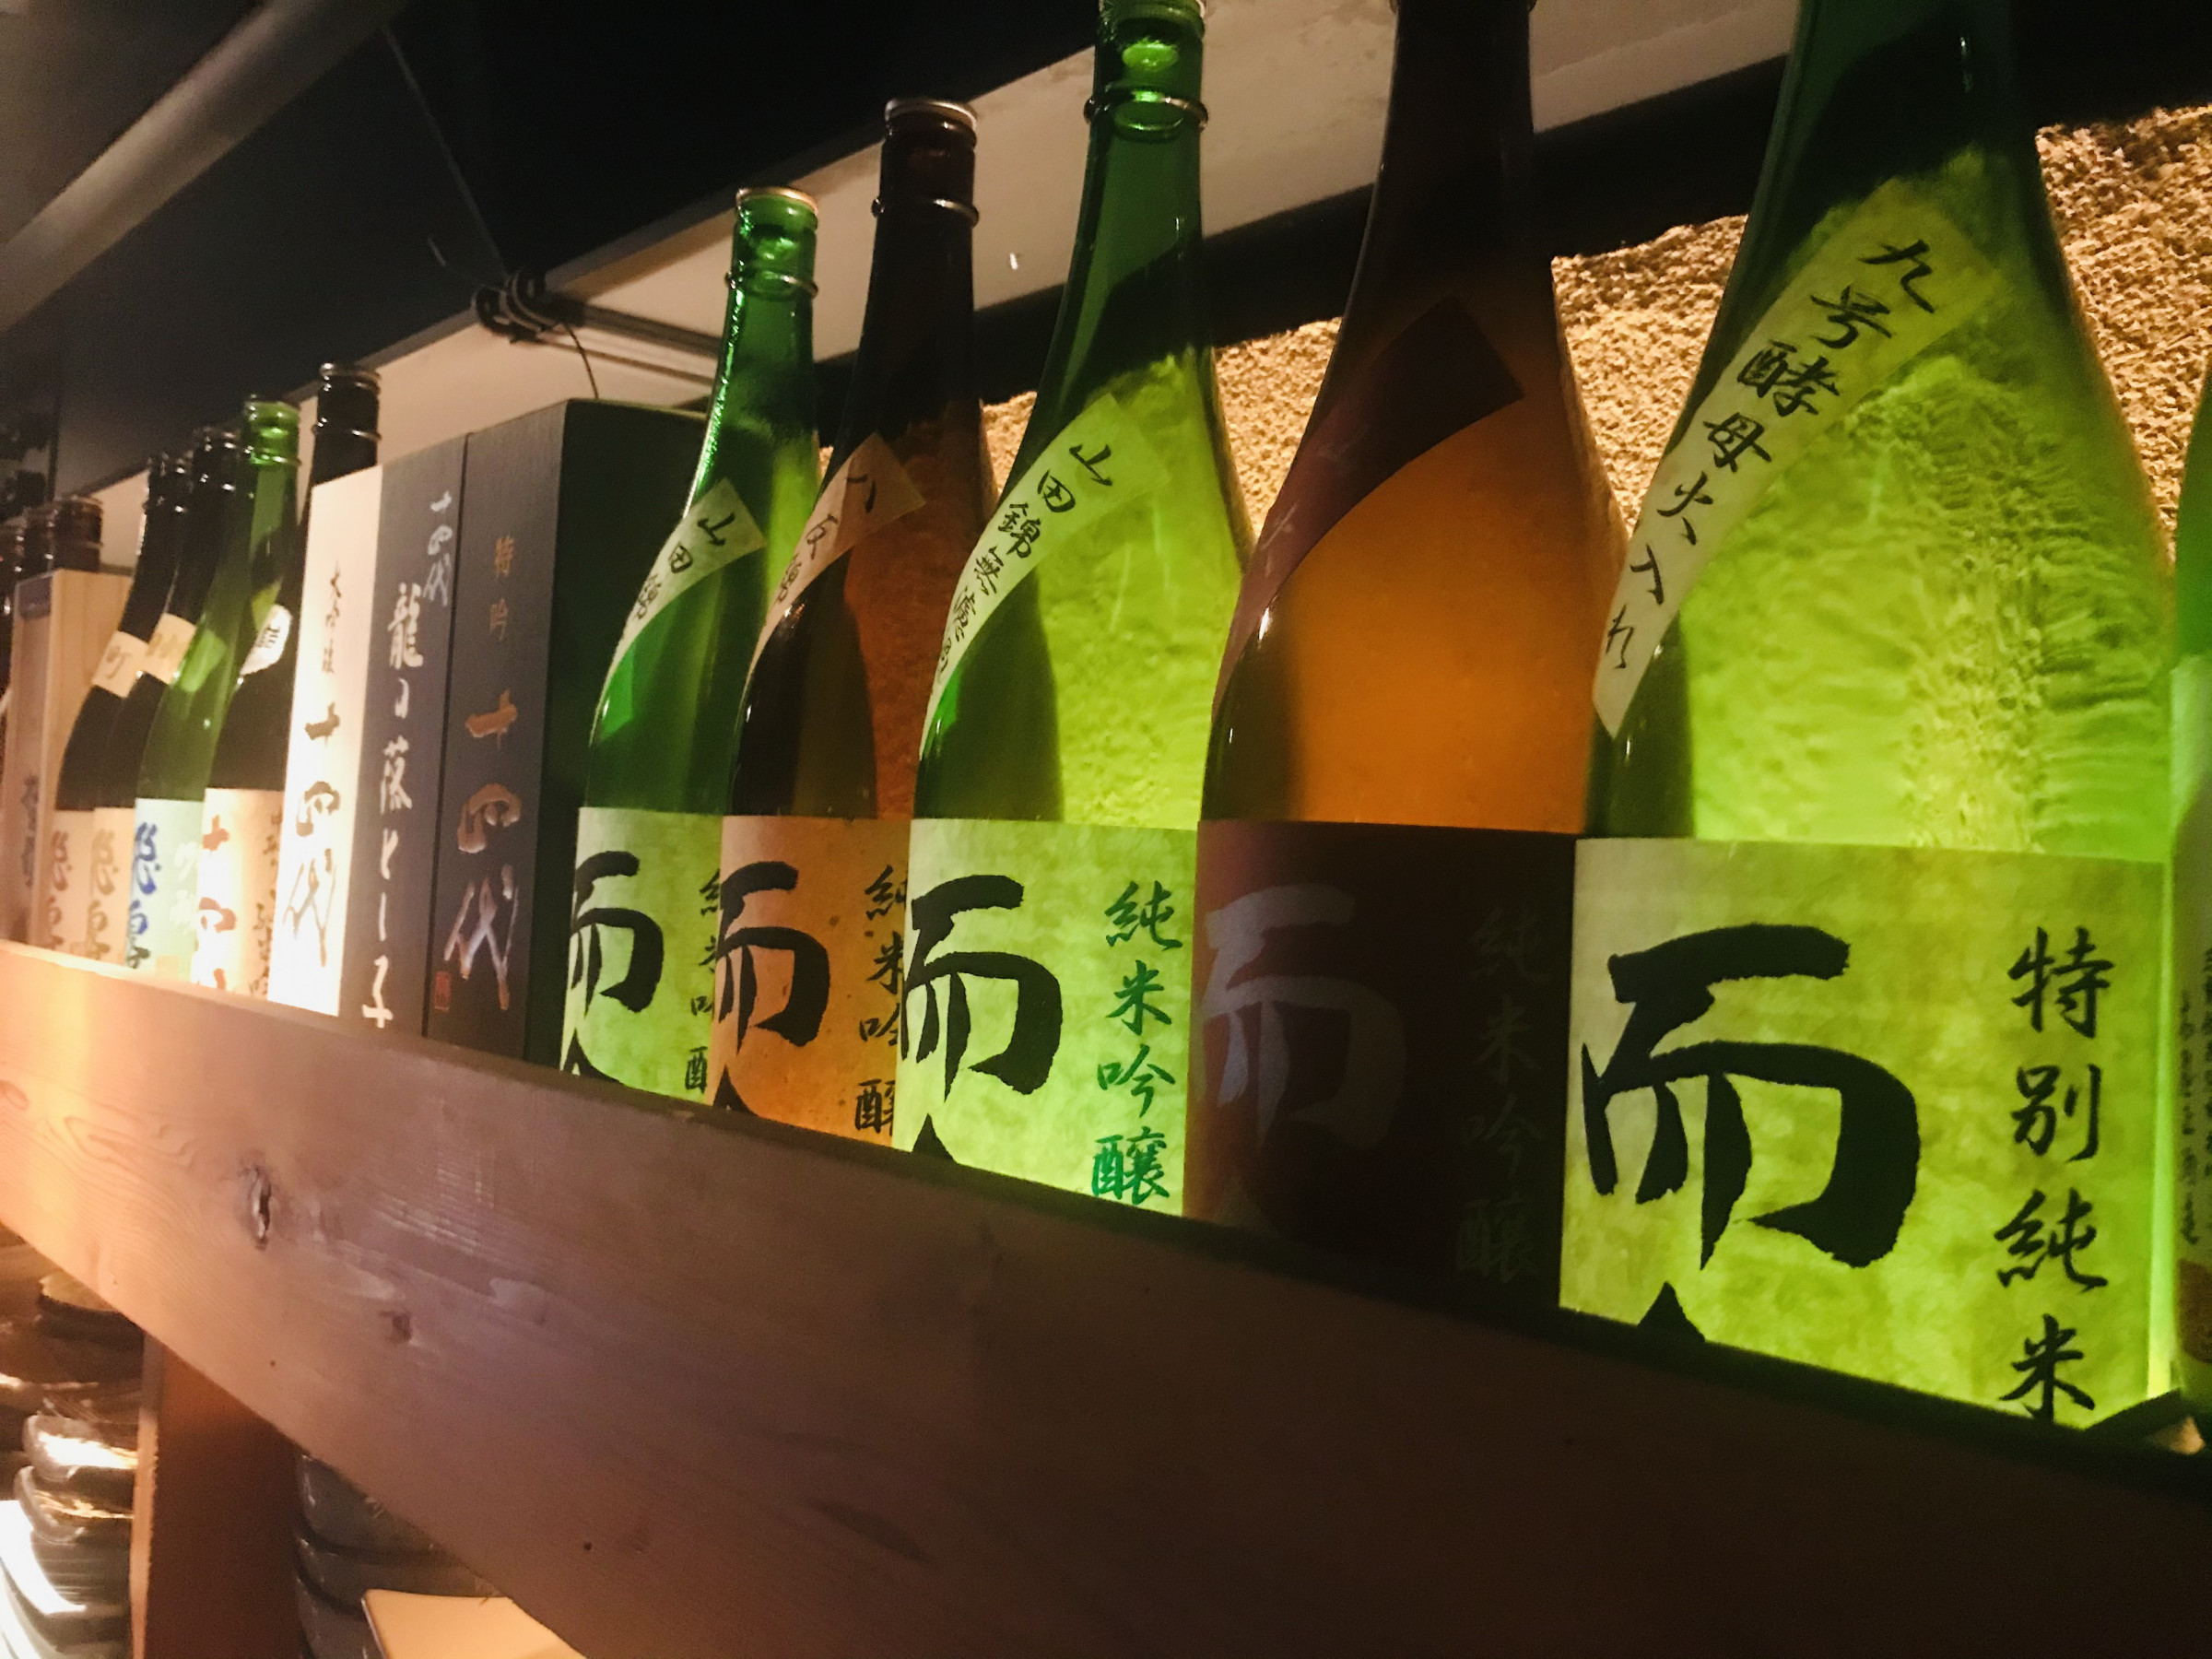 入手困難な銘酒のラインナップもお手頃価格で。日本酒は季節ごとに銘柄を随時入れ替えます。